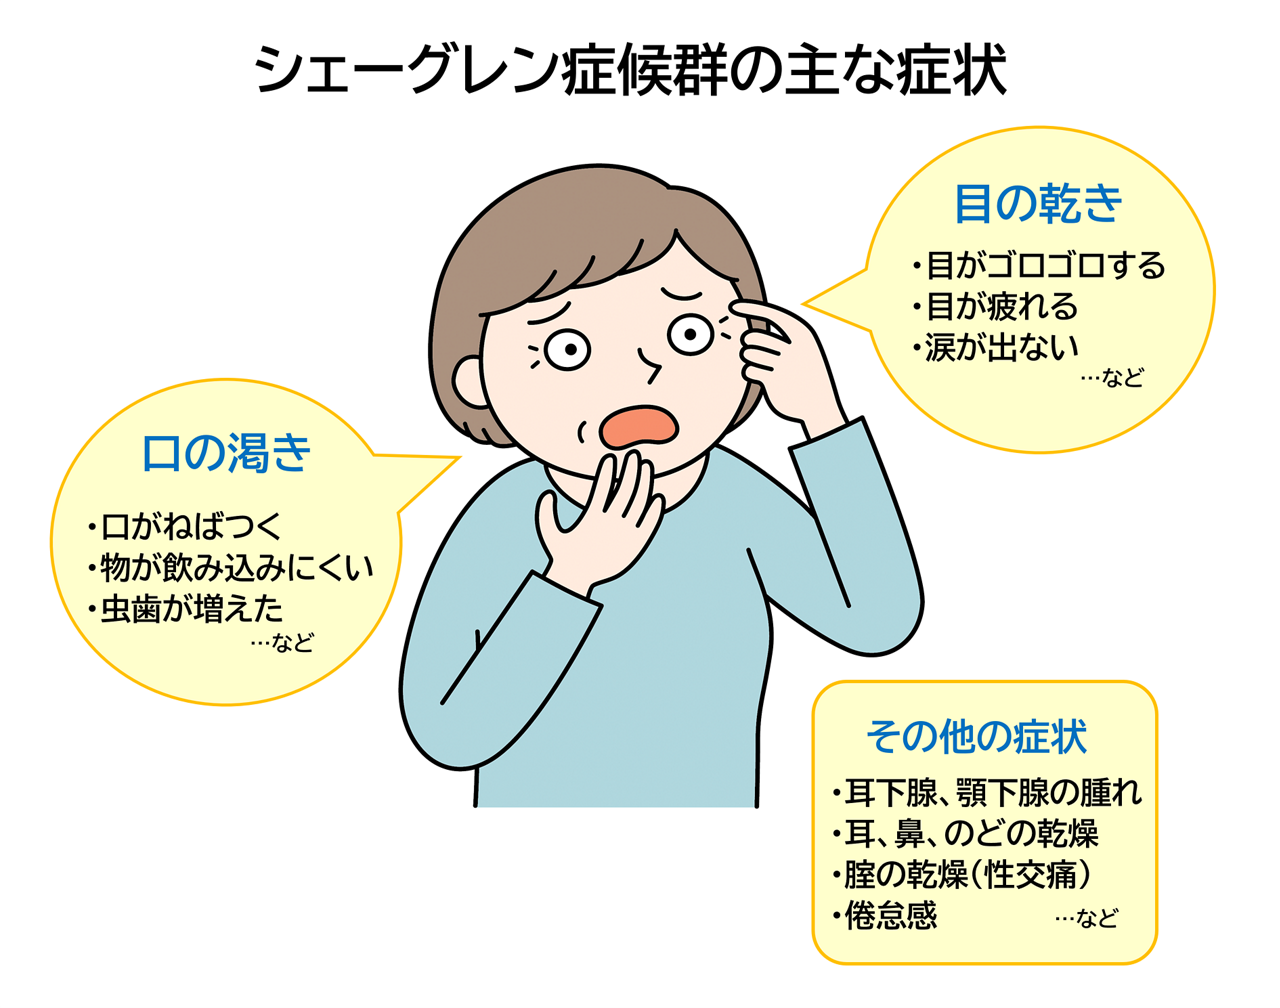 シェーグレン症候群の主な症状。口の渇き（口がねばつく、物が飲み込みにくい、虫歯が増えたなど）・目の渇き（目がゴロゴロする、目が疲れる、涙が出ないなど）・その他の症状（耳下腺・顎下腺の腫れ、耳・鼻・のどの乾燥、膣の乾燥・性交痛、倦怠感など）